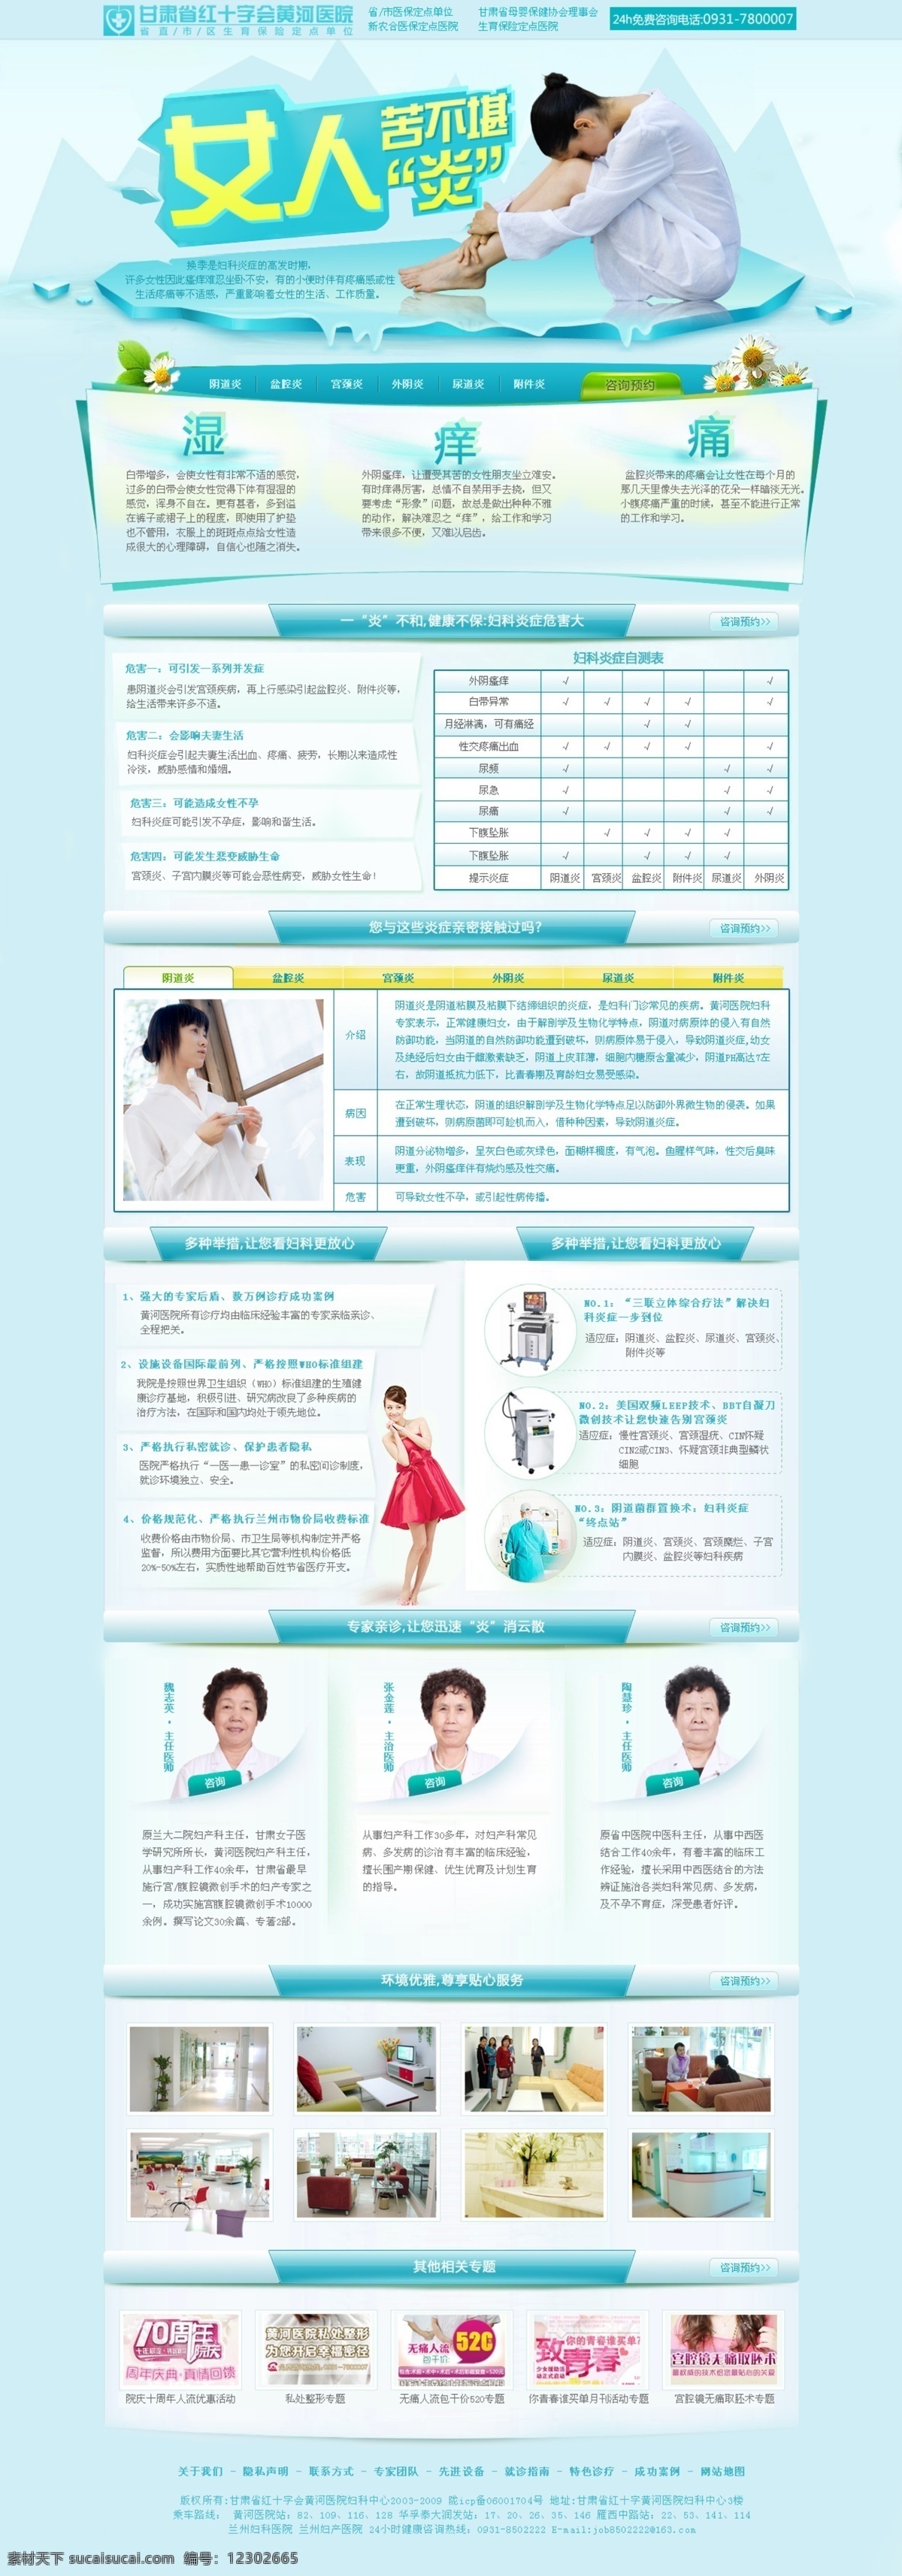 妇科 妇科炎症 网页模板 医疗 医院 源文件 中文模板 专题 模板下载 妇科炎症专题 网页素材